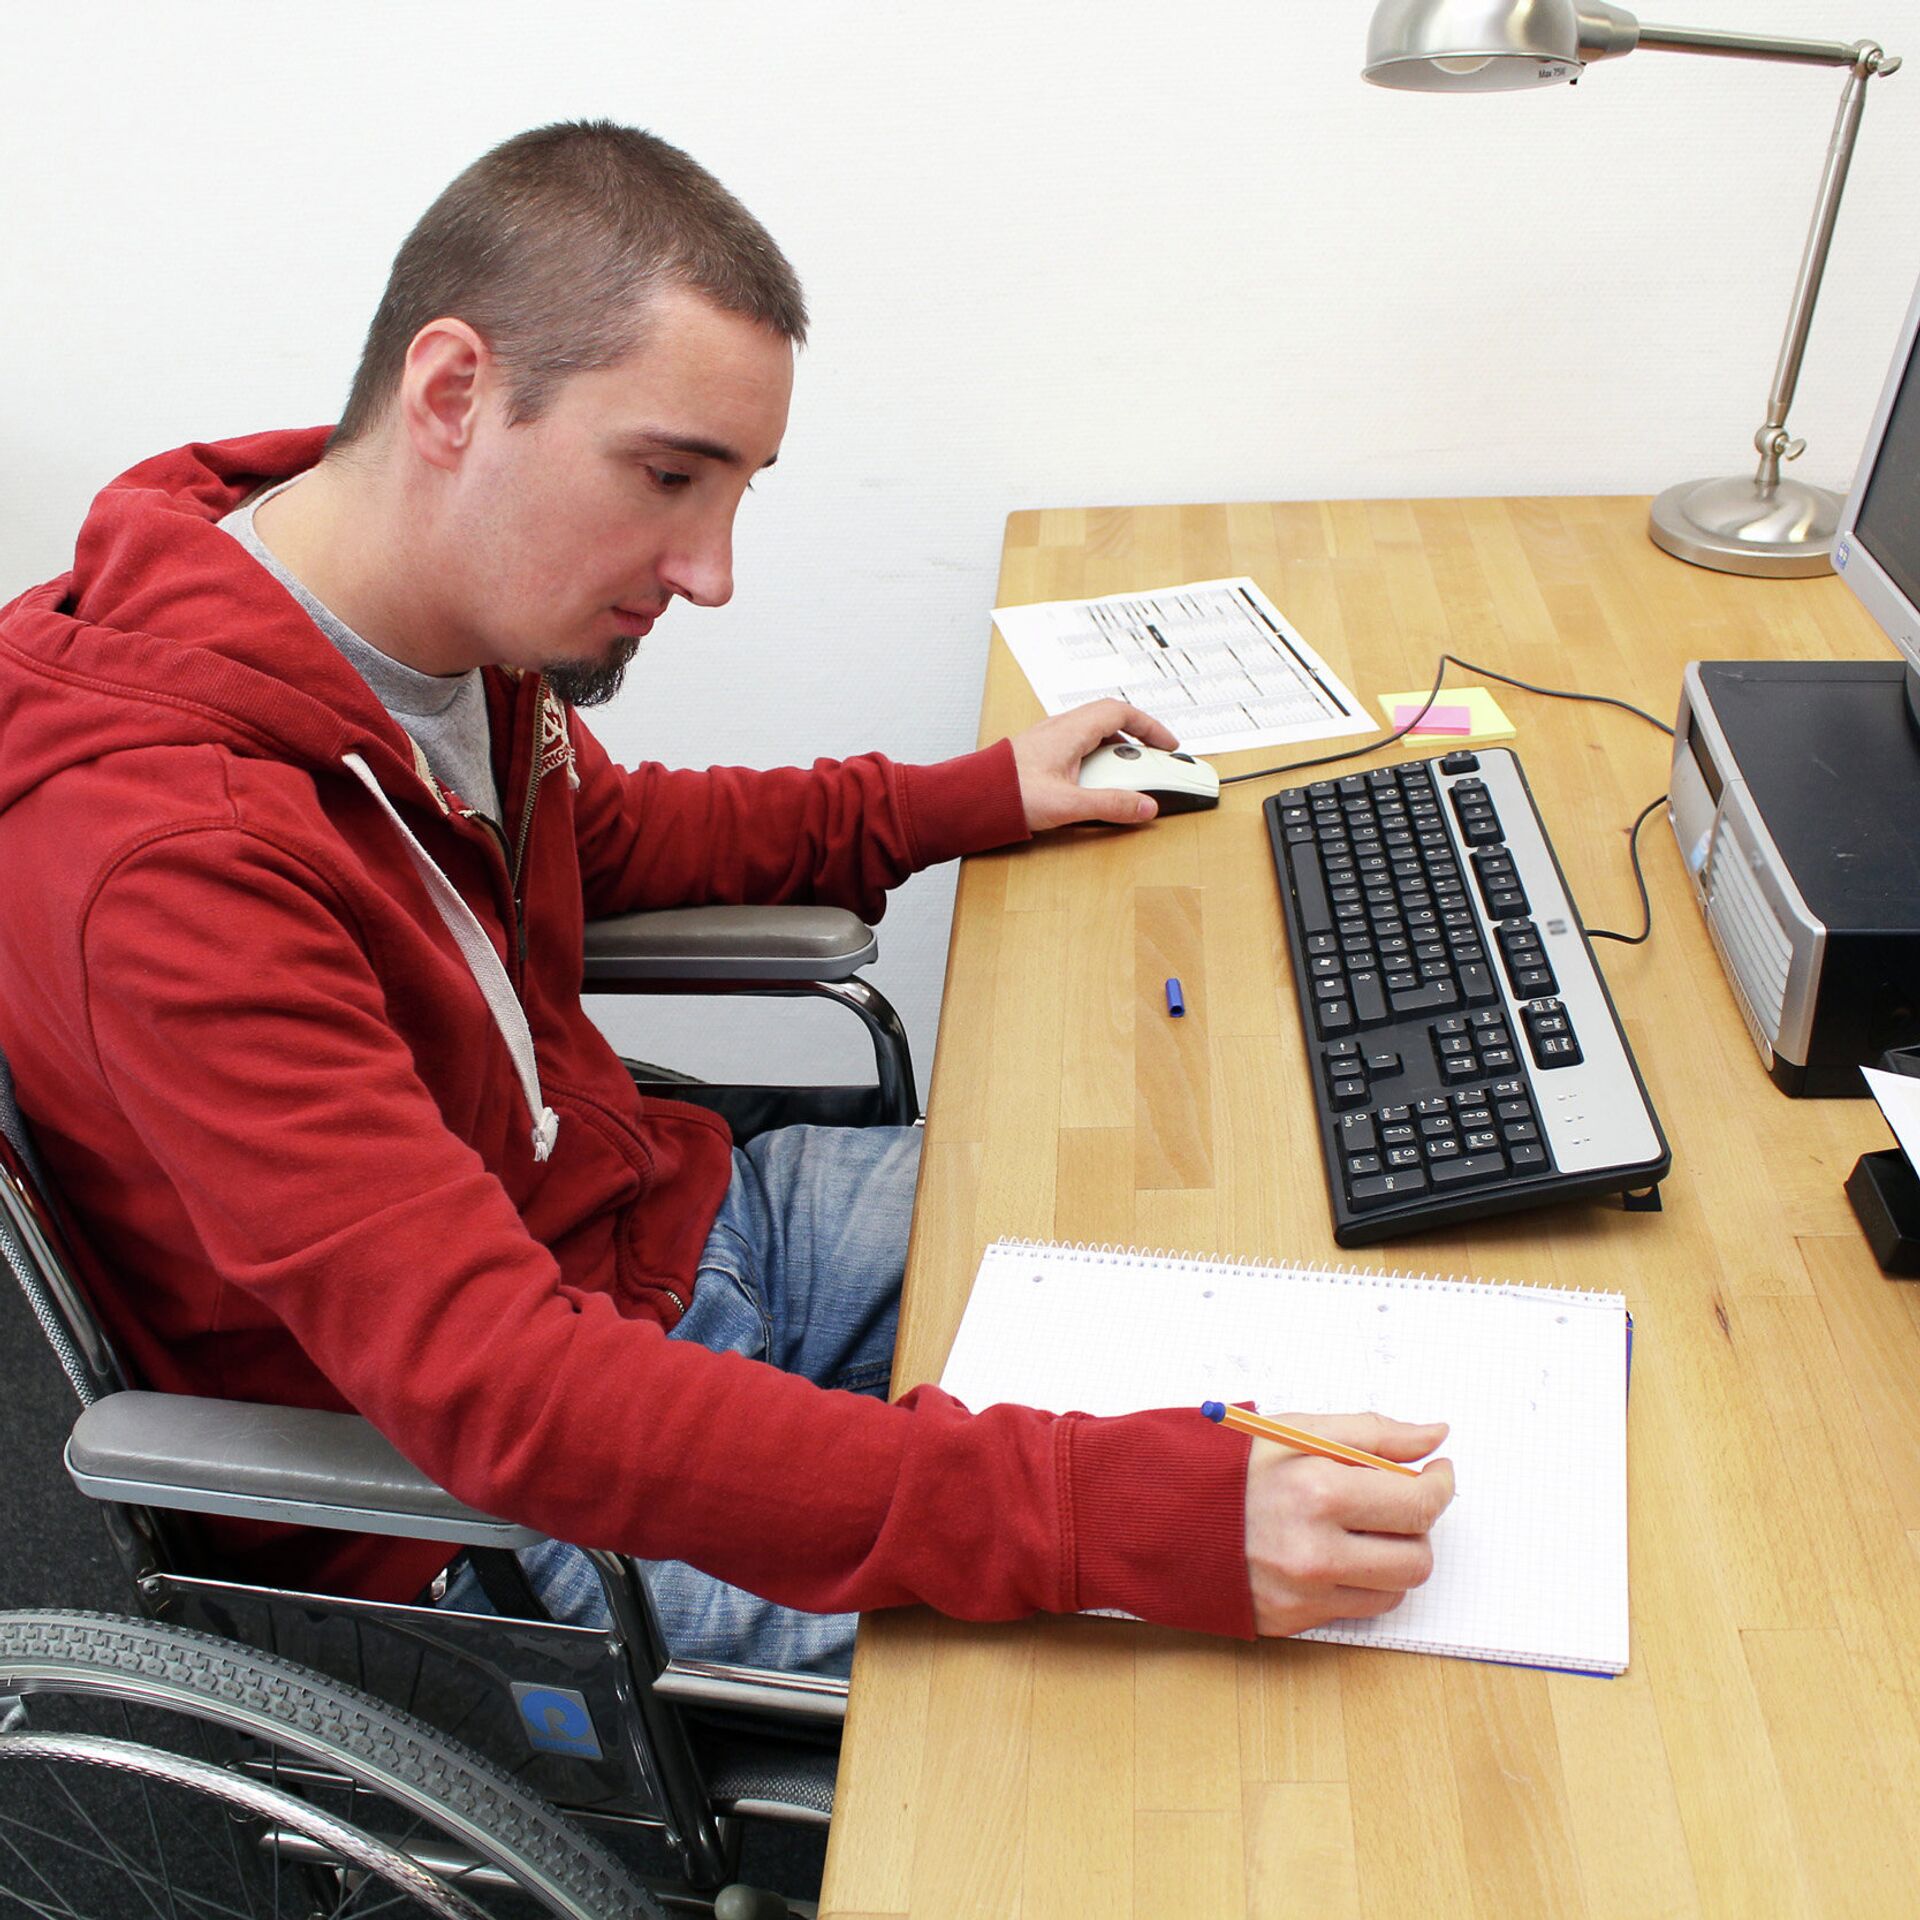 Работа риа. Инвалид за компьютером. Людей с ограниченными возможностями компьютер. Рабочие места для инвалидов. Человек за компьютером.